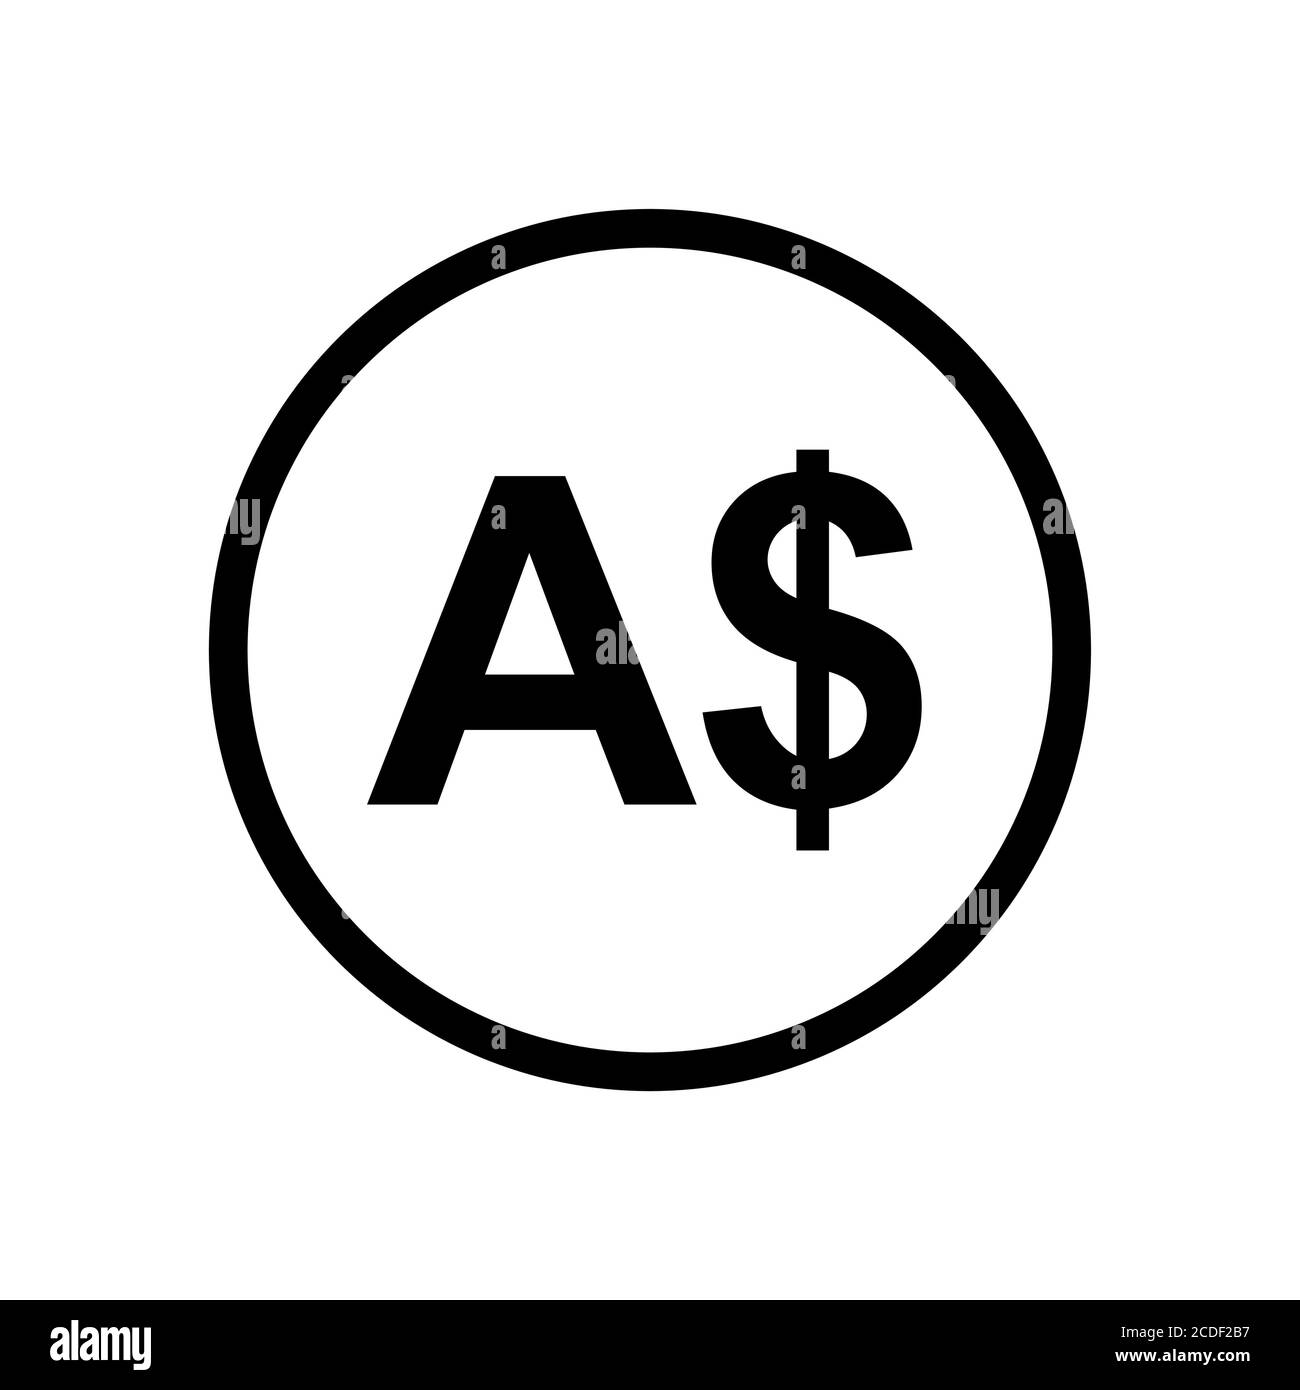 Icona in bianco e nero monocromo della moneta australiana. Simbolo della valuta corrente. Illustrazione Vettoriale